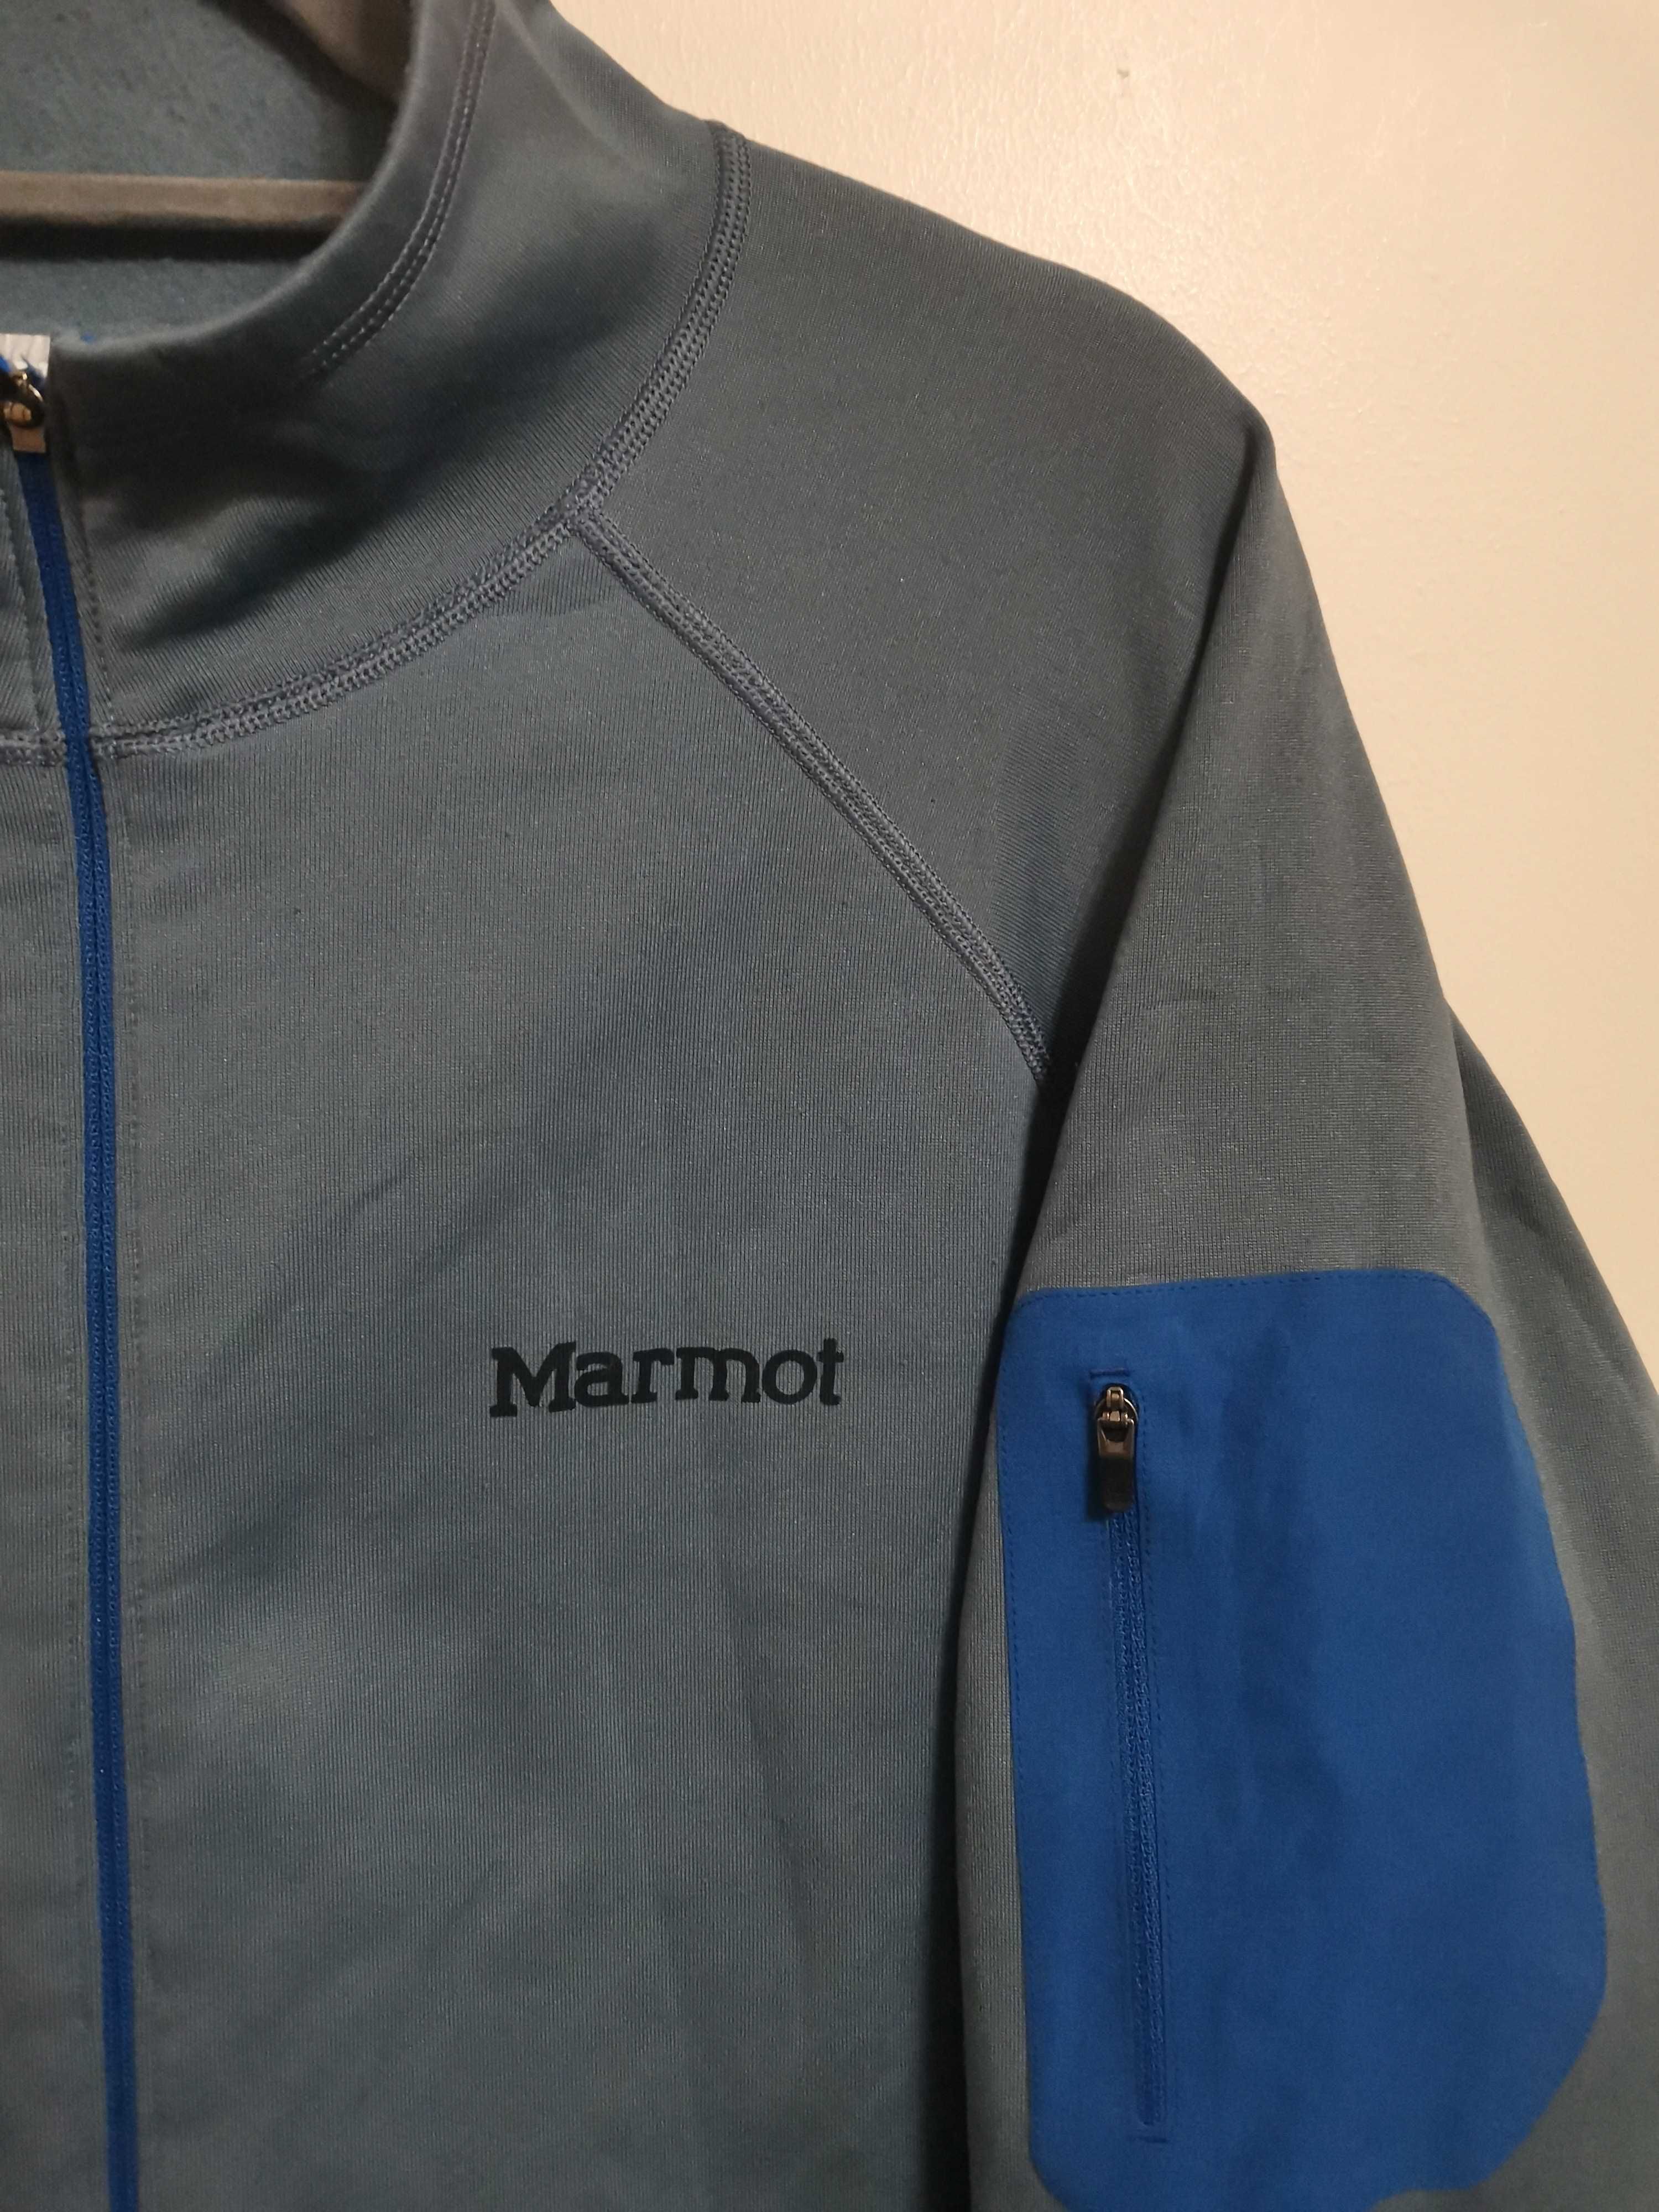 Marmot Stretch Fleece Jacket.